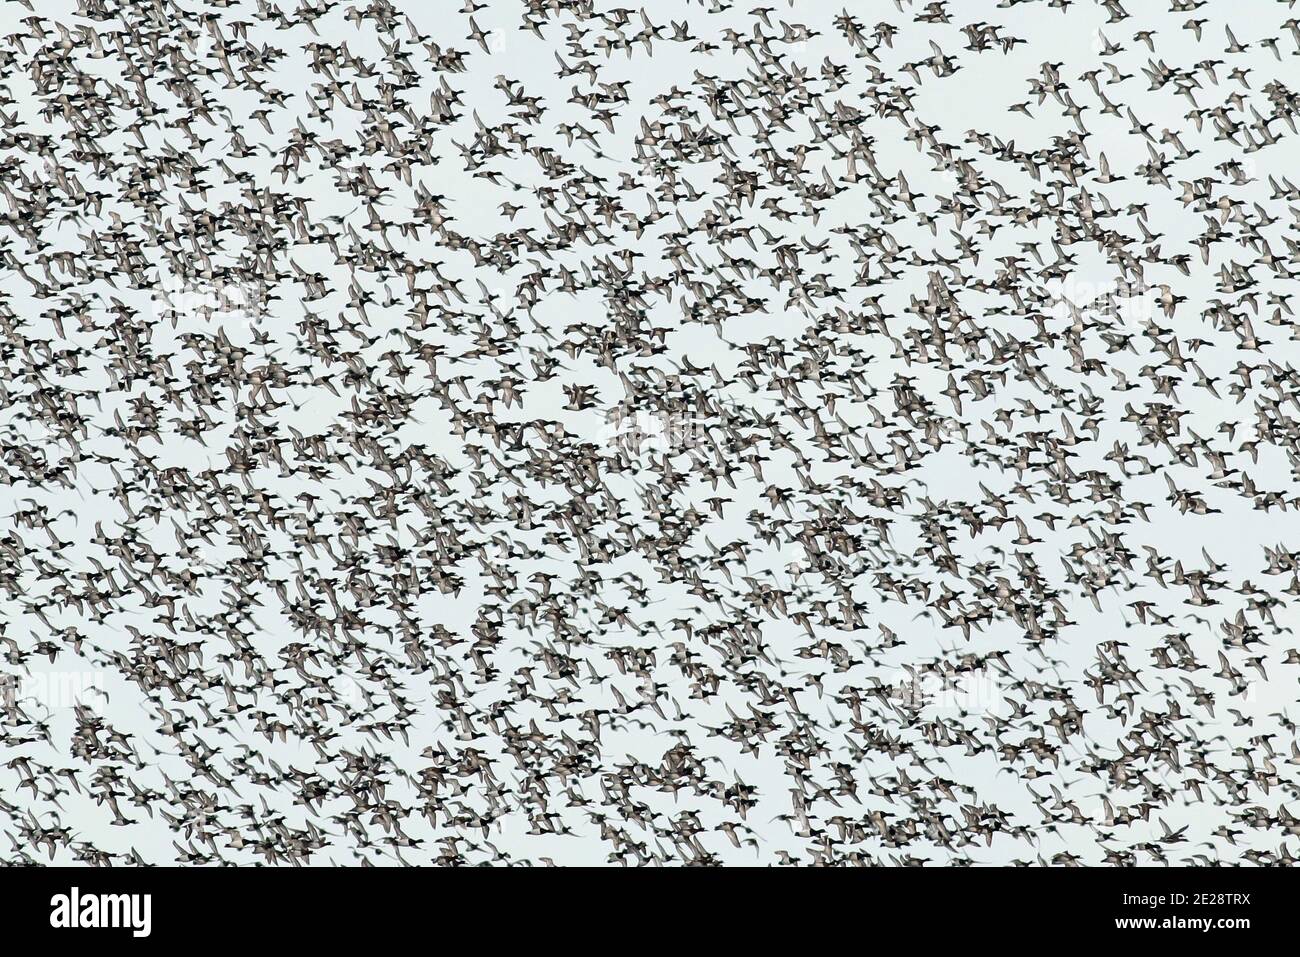 greater scaup (Aythya marila), Huge flock of wintering Greater Scaups in flight over the Ijsselmeer, Netherlands, Northern Netherlands Stock Photo